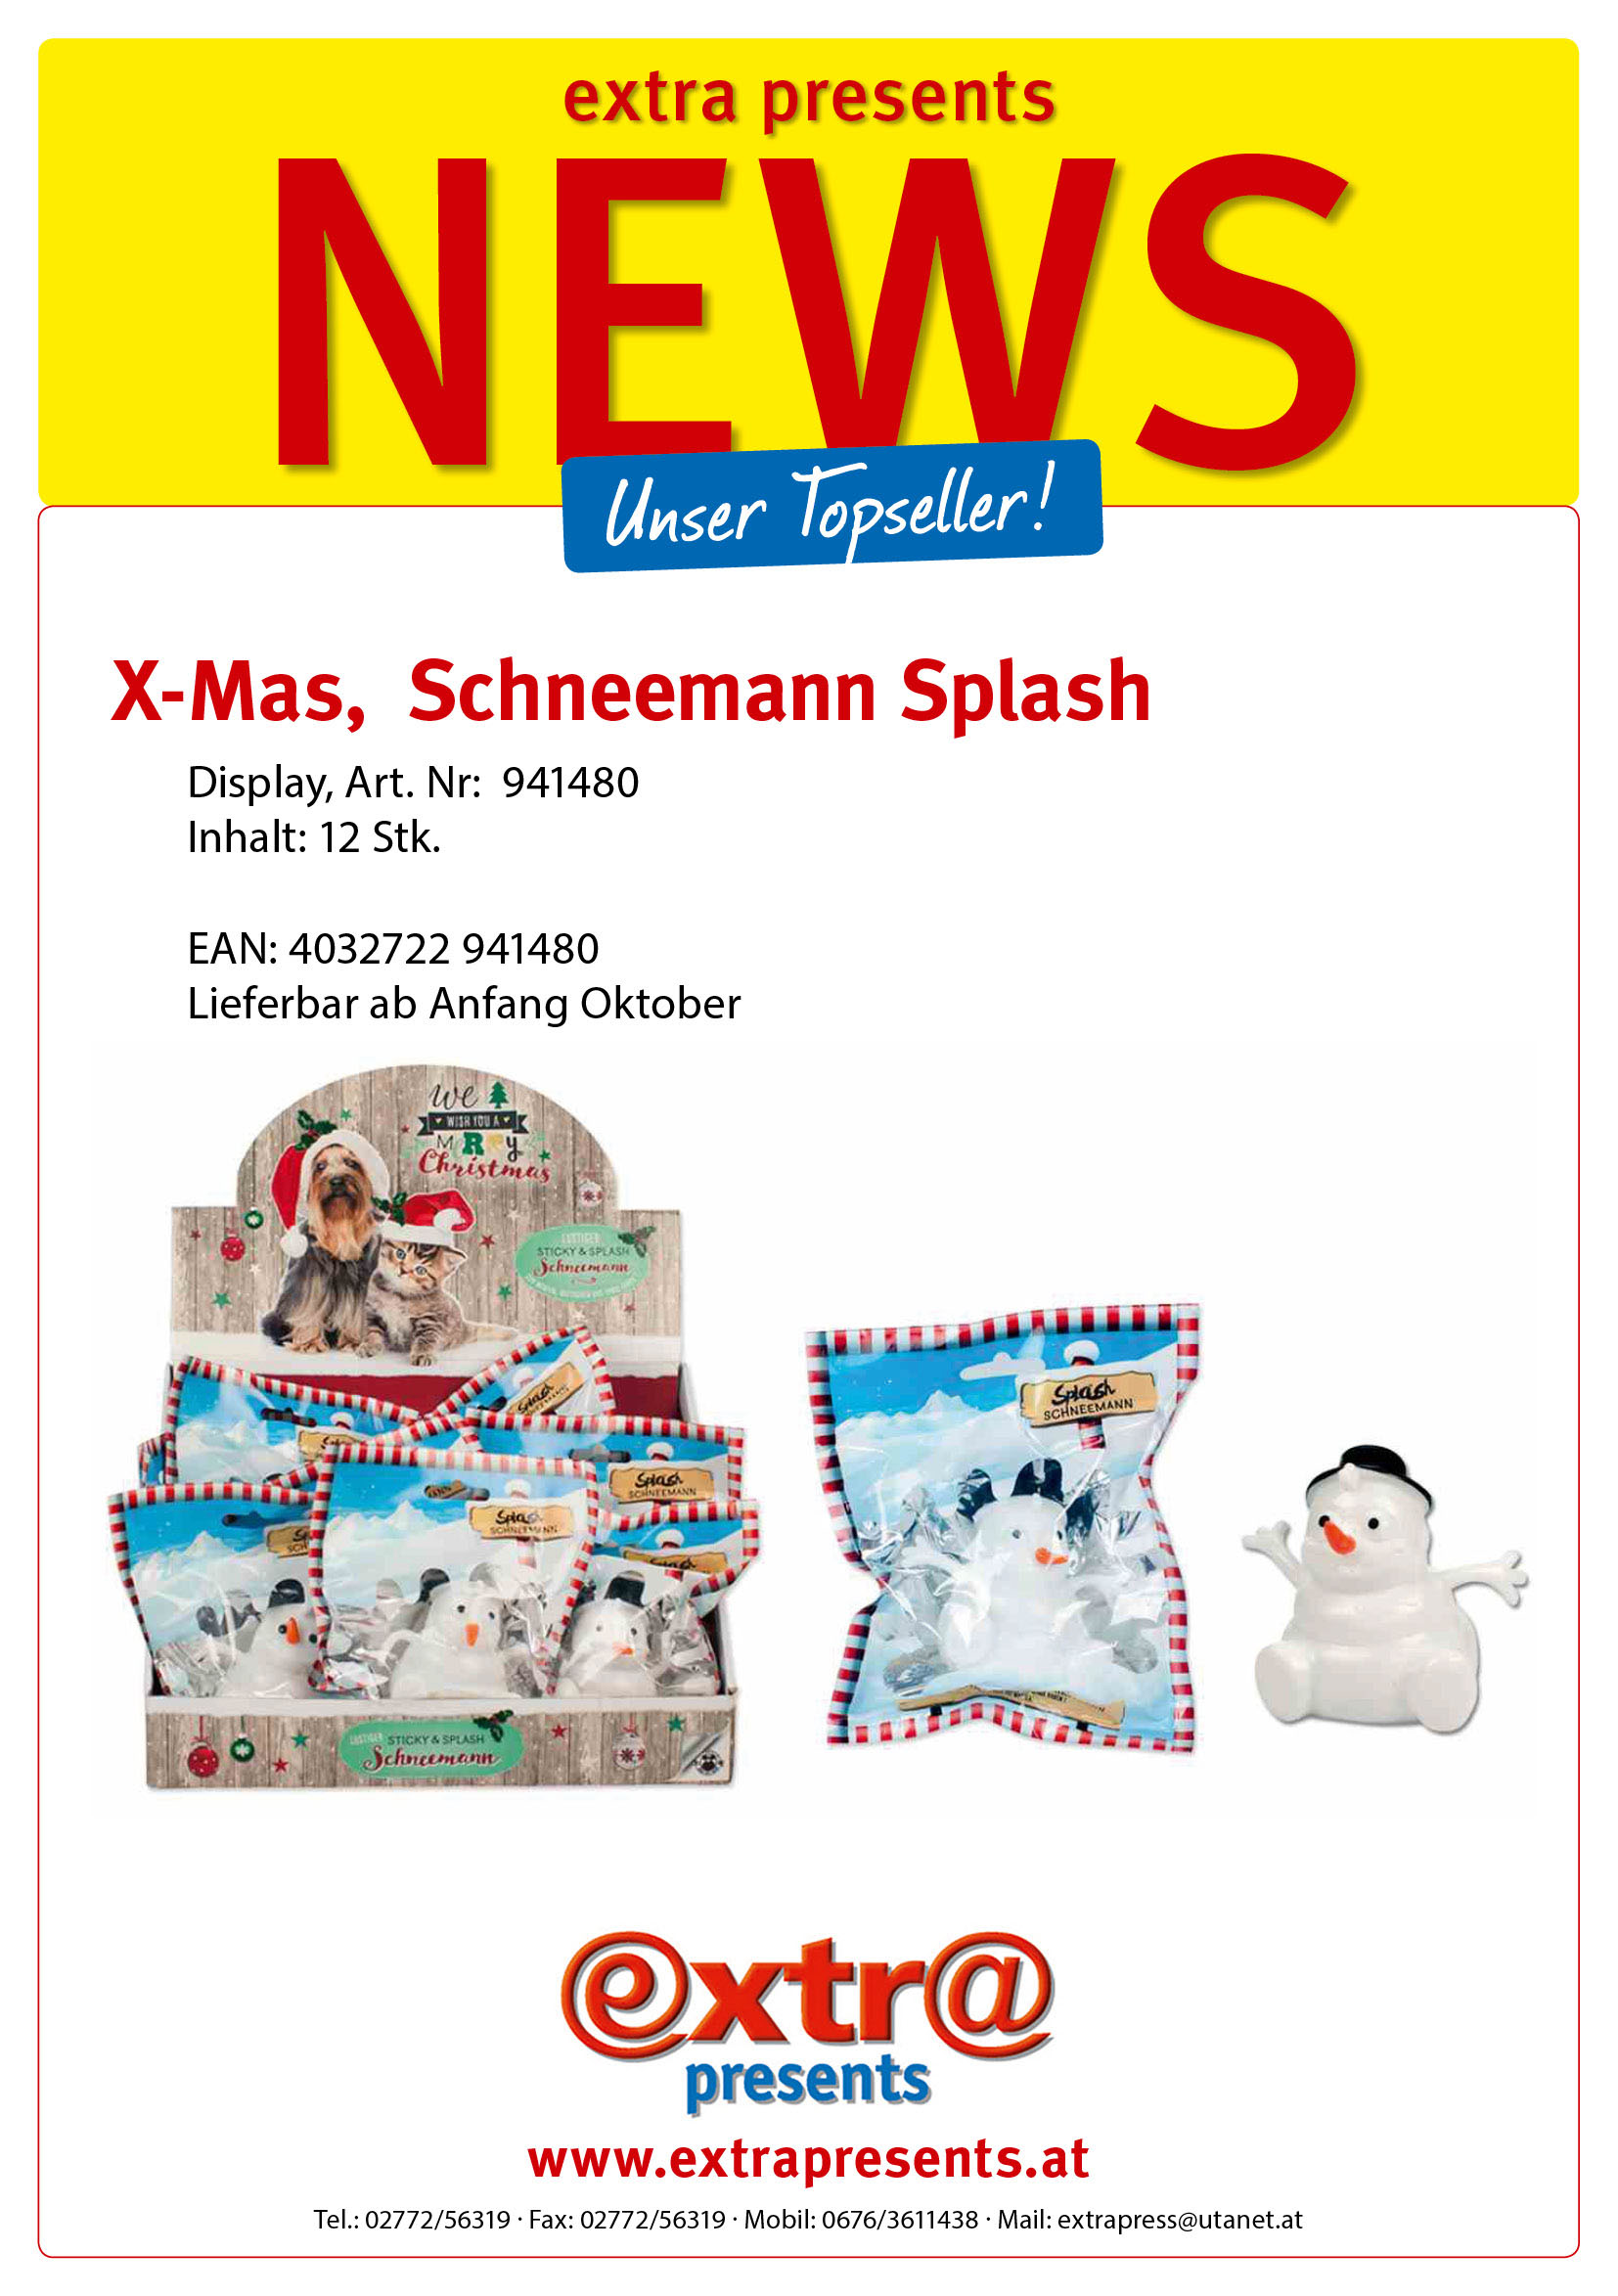 X-Mas, Schneemann Splash